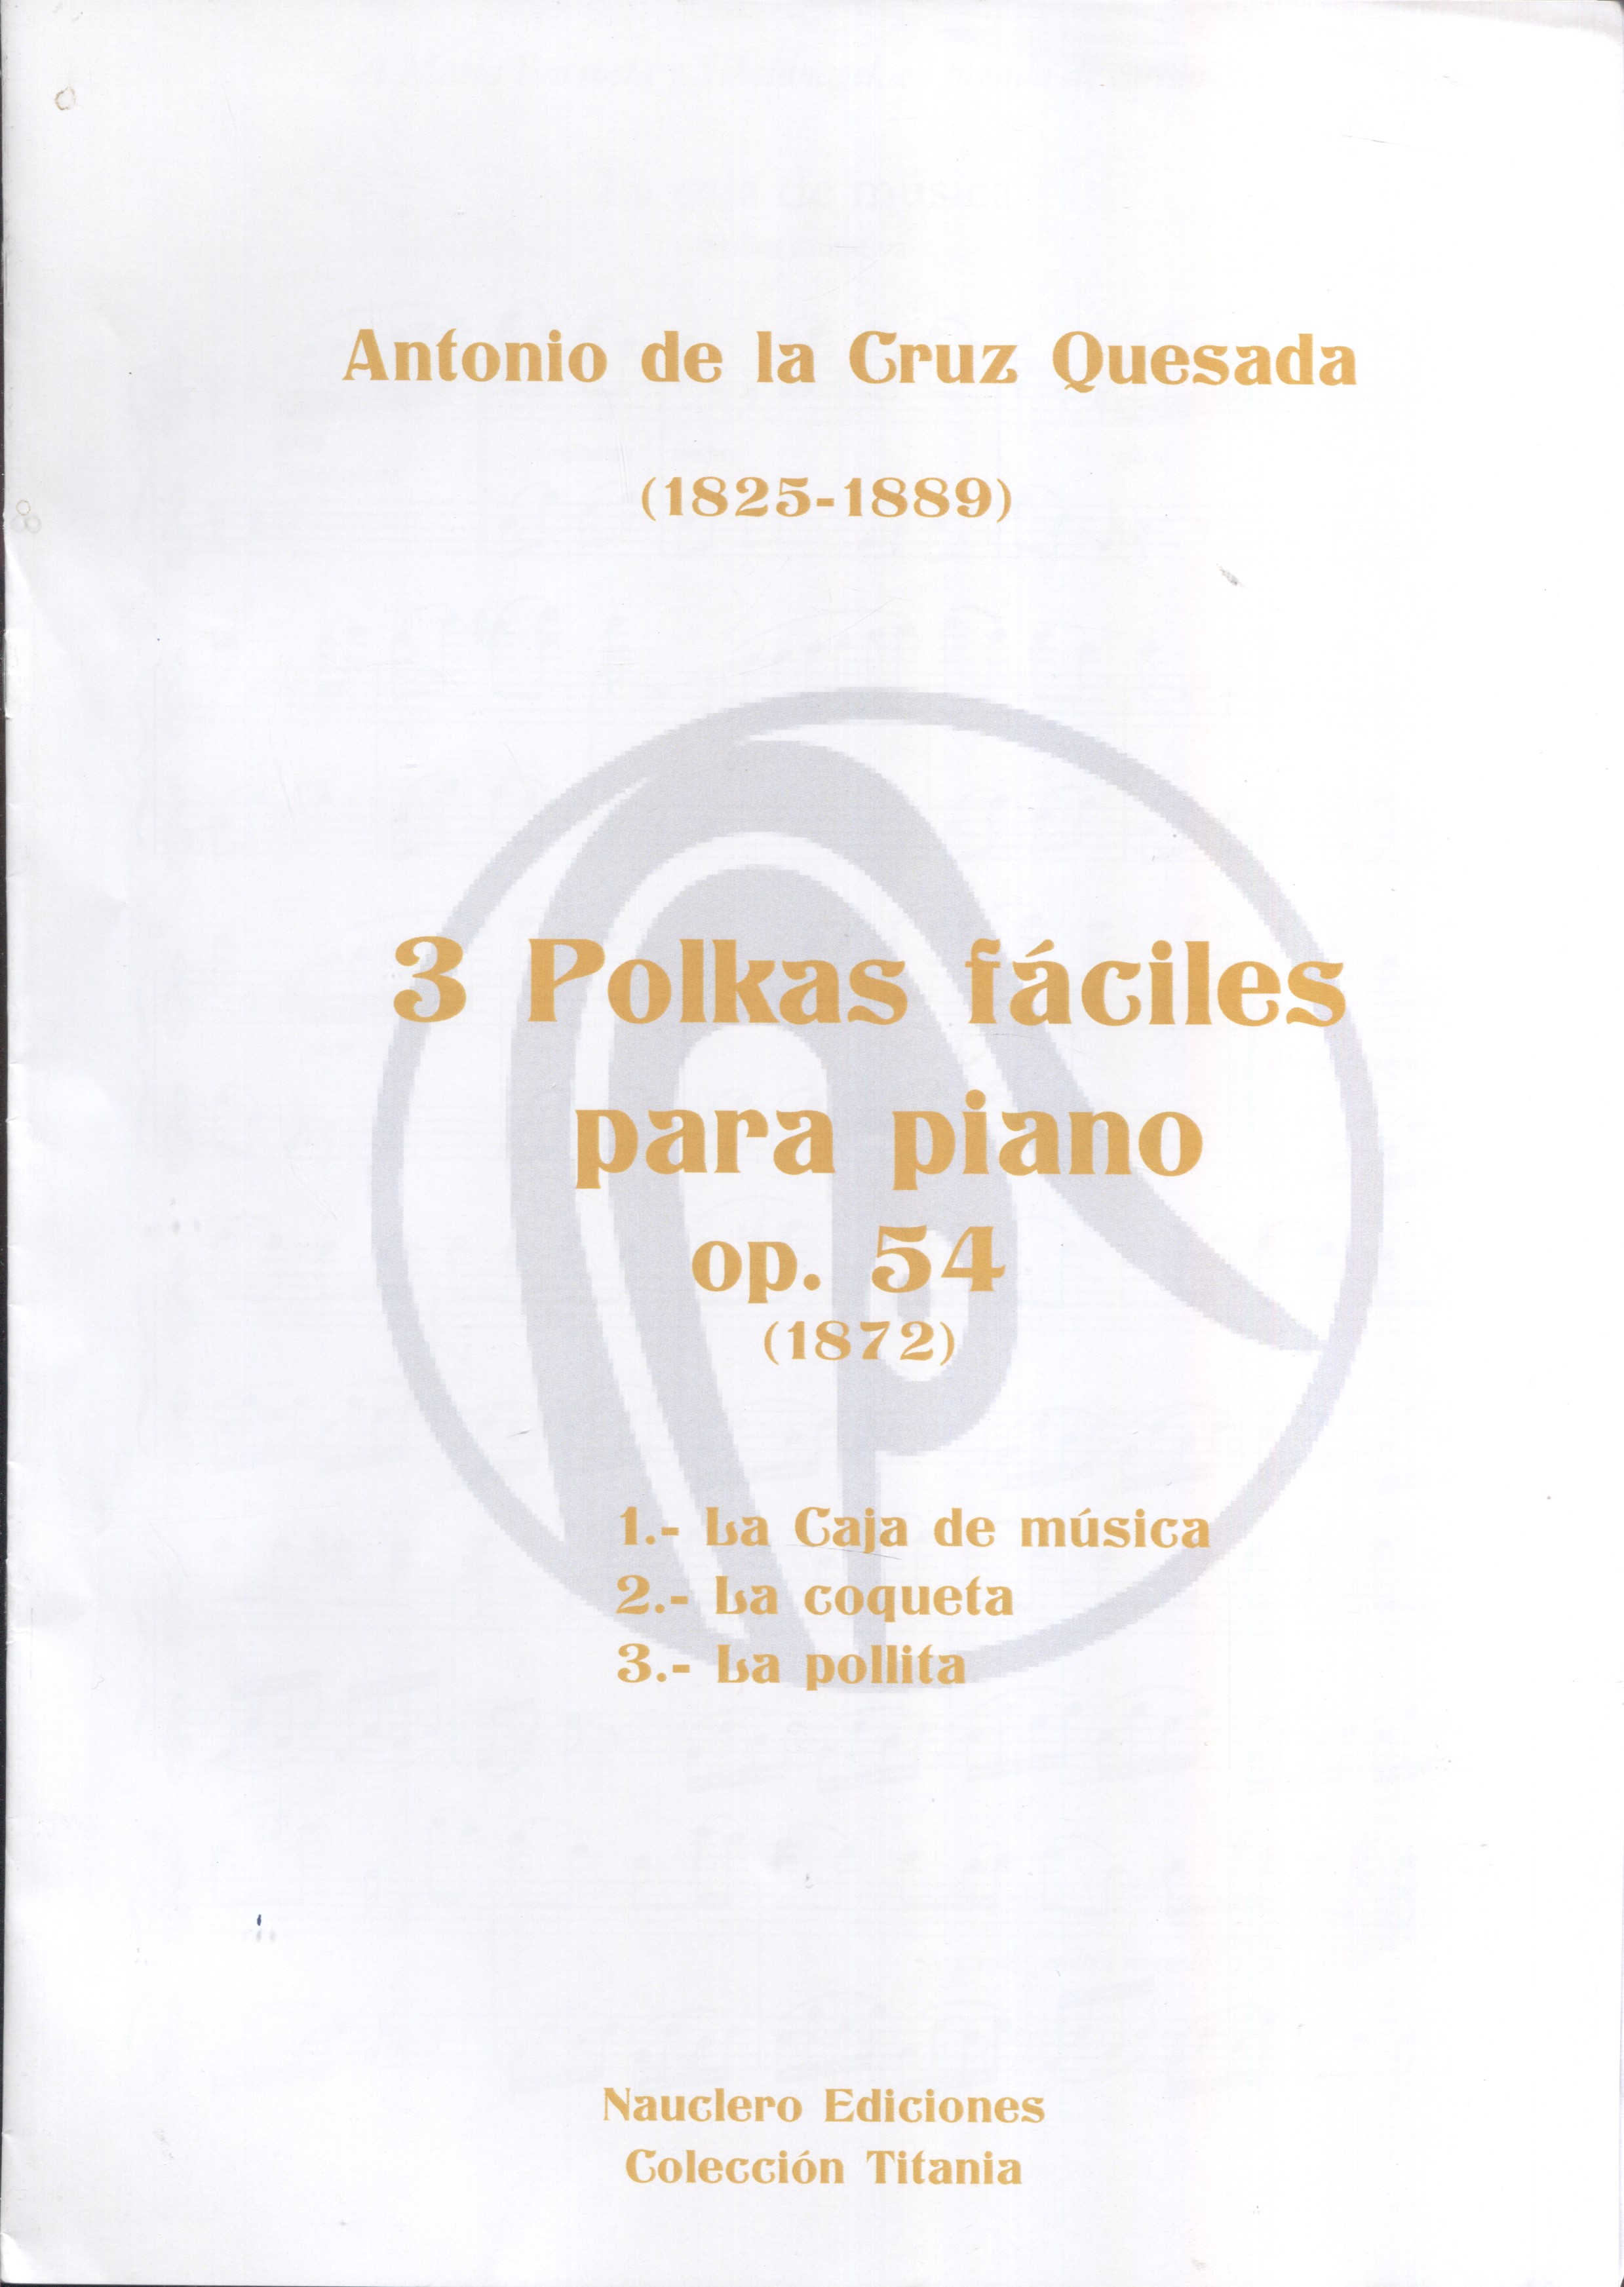 3 polkas fáciles para piano, opus 54 